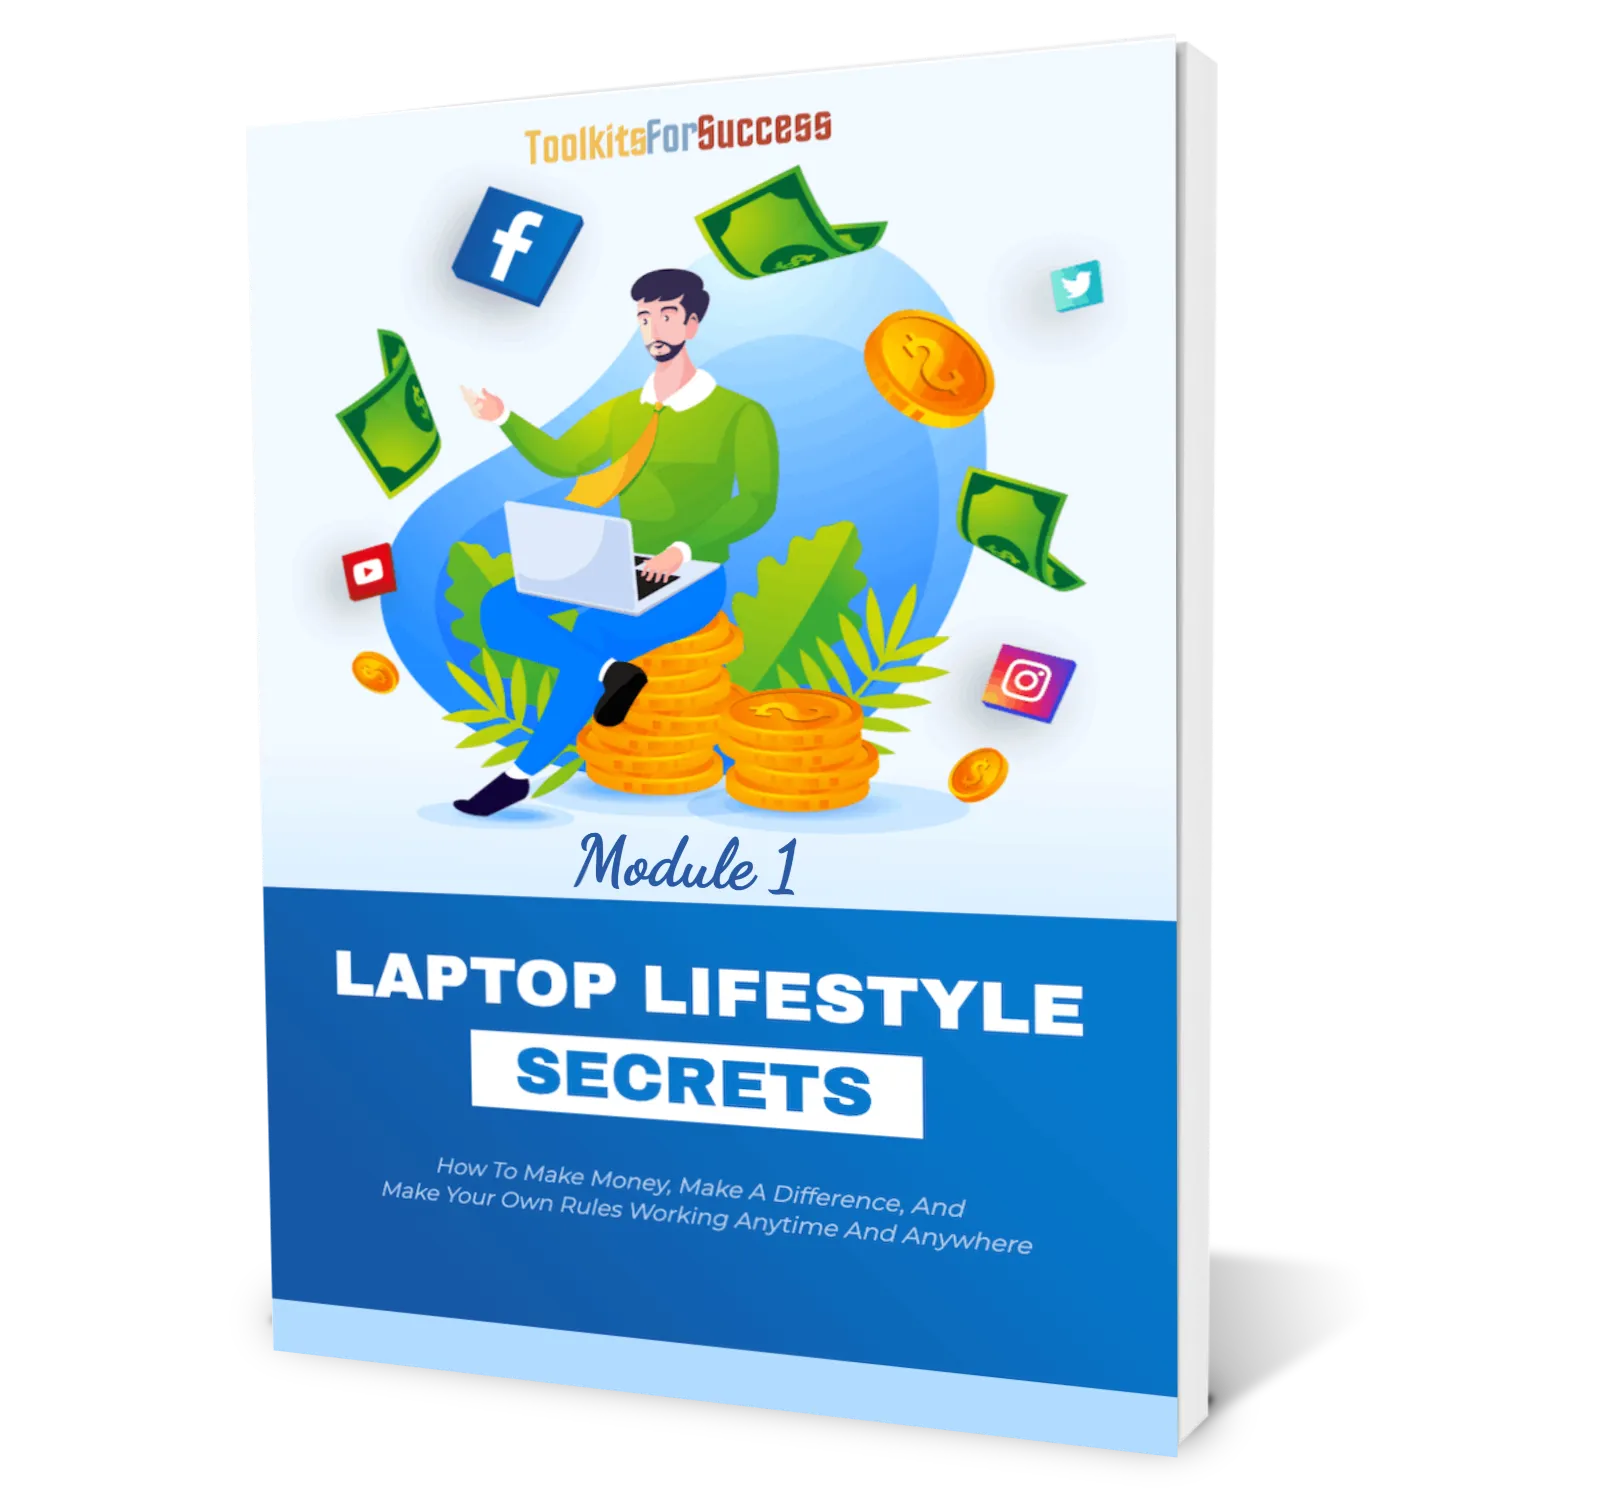 Laptop Lifestyle Secrets Module 1